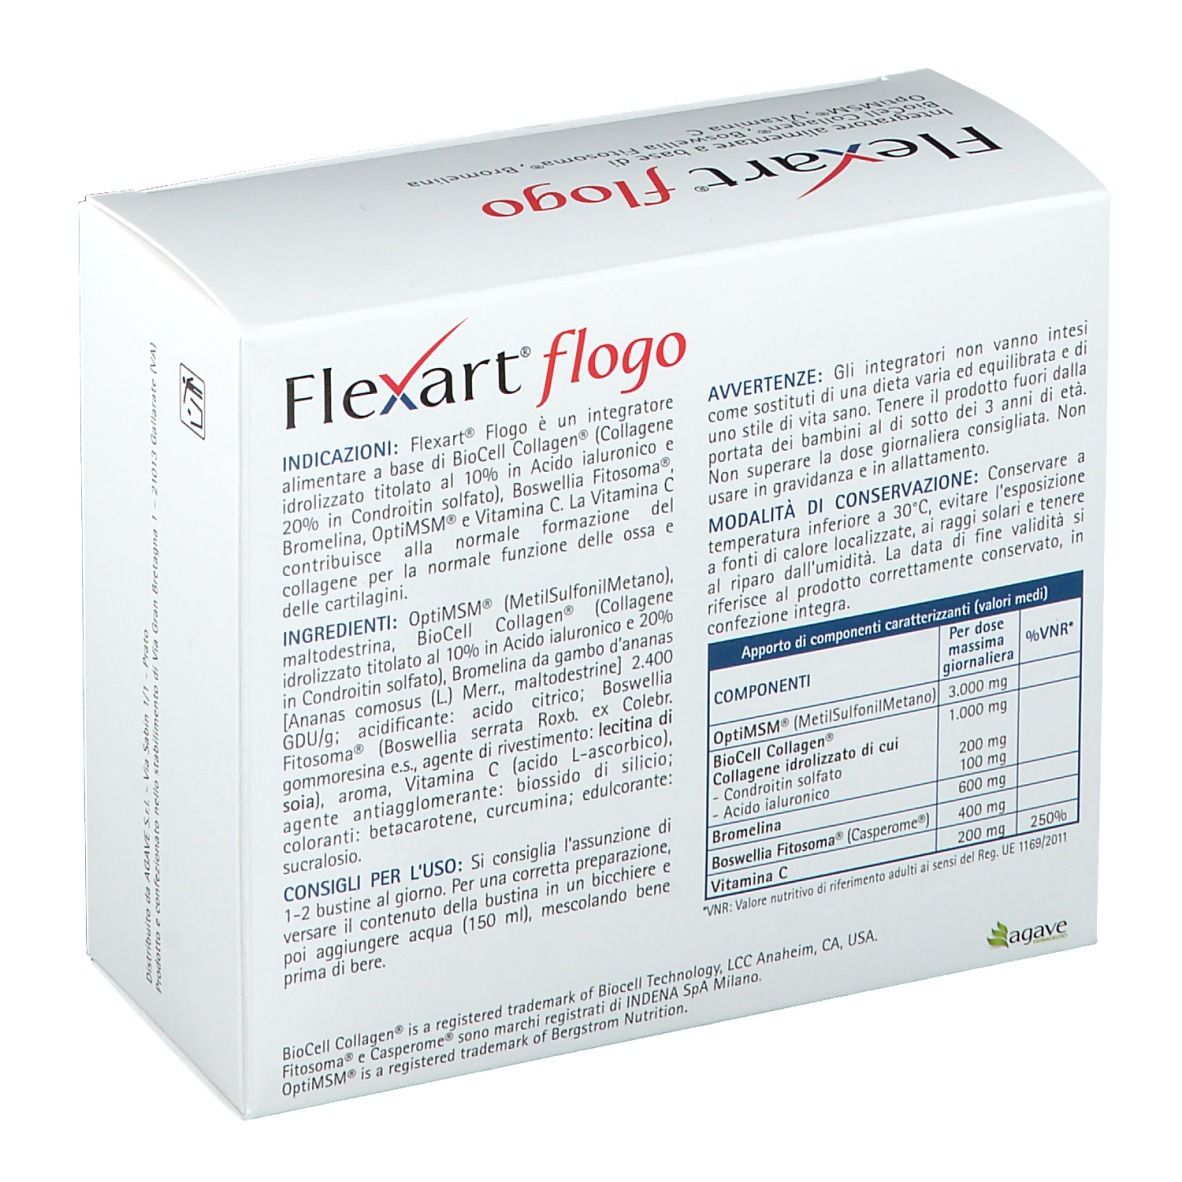 Flexart® Flogo Bustine